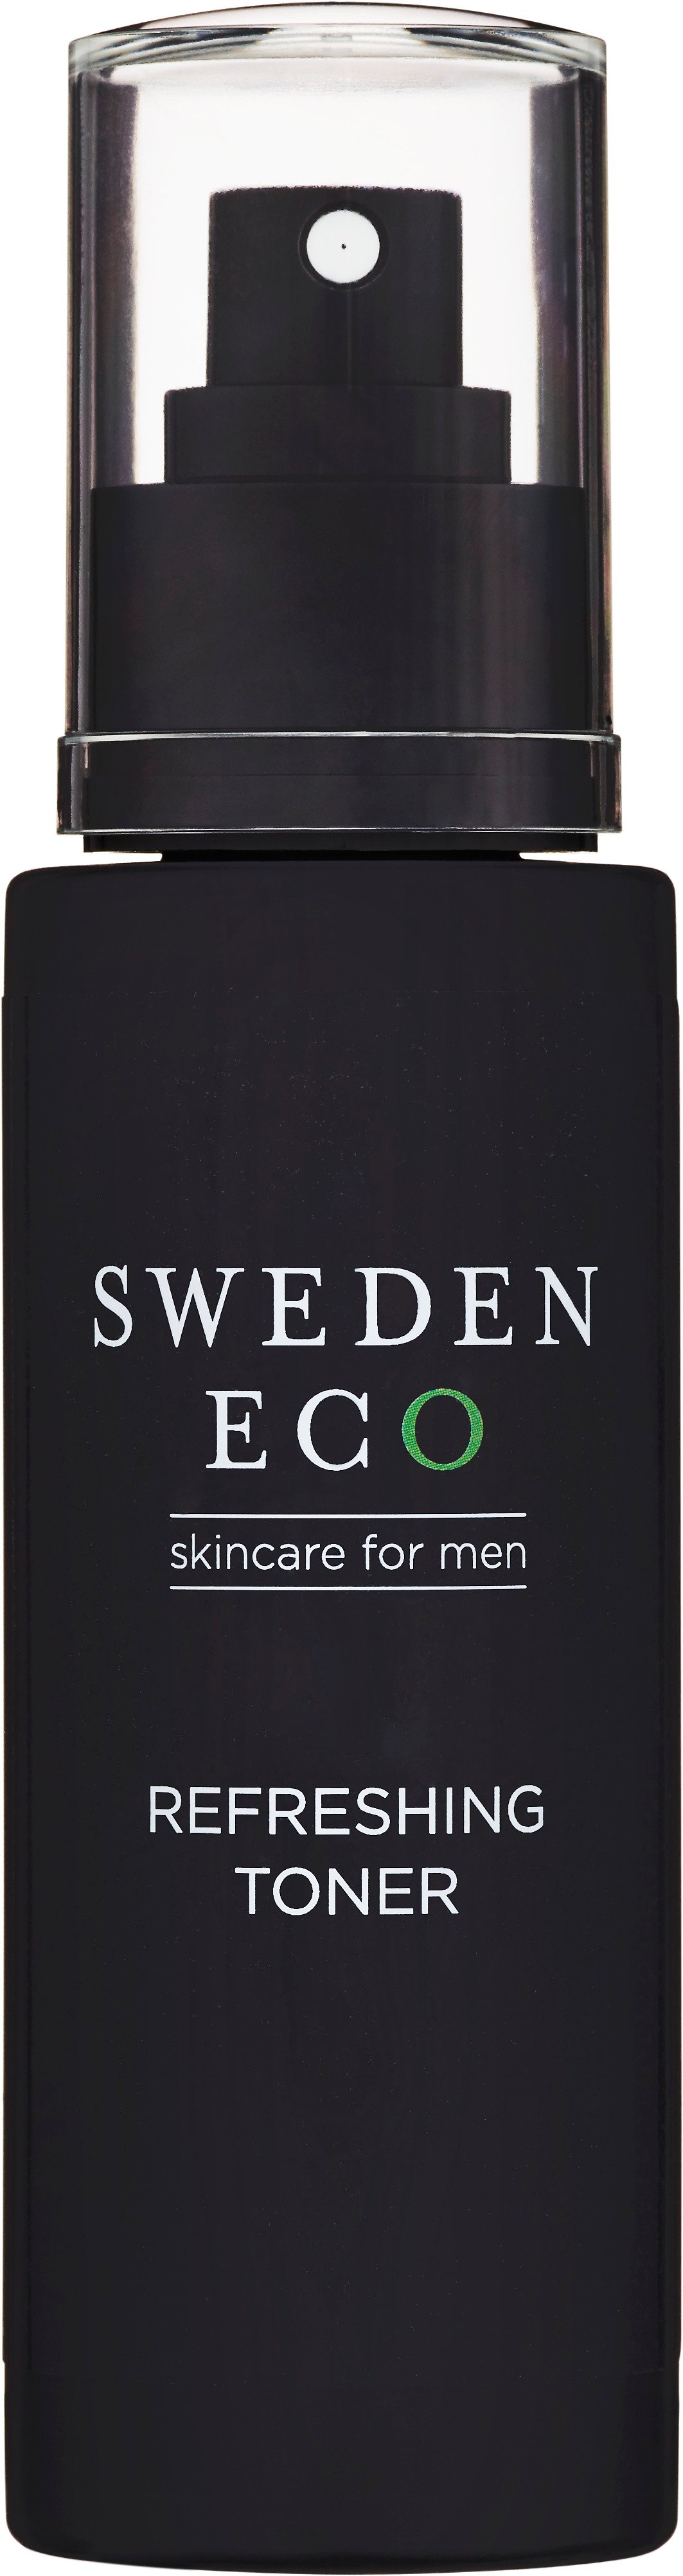 Sweden Eco Skincare For Men Refreshing Toner 100 ml